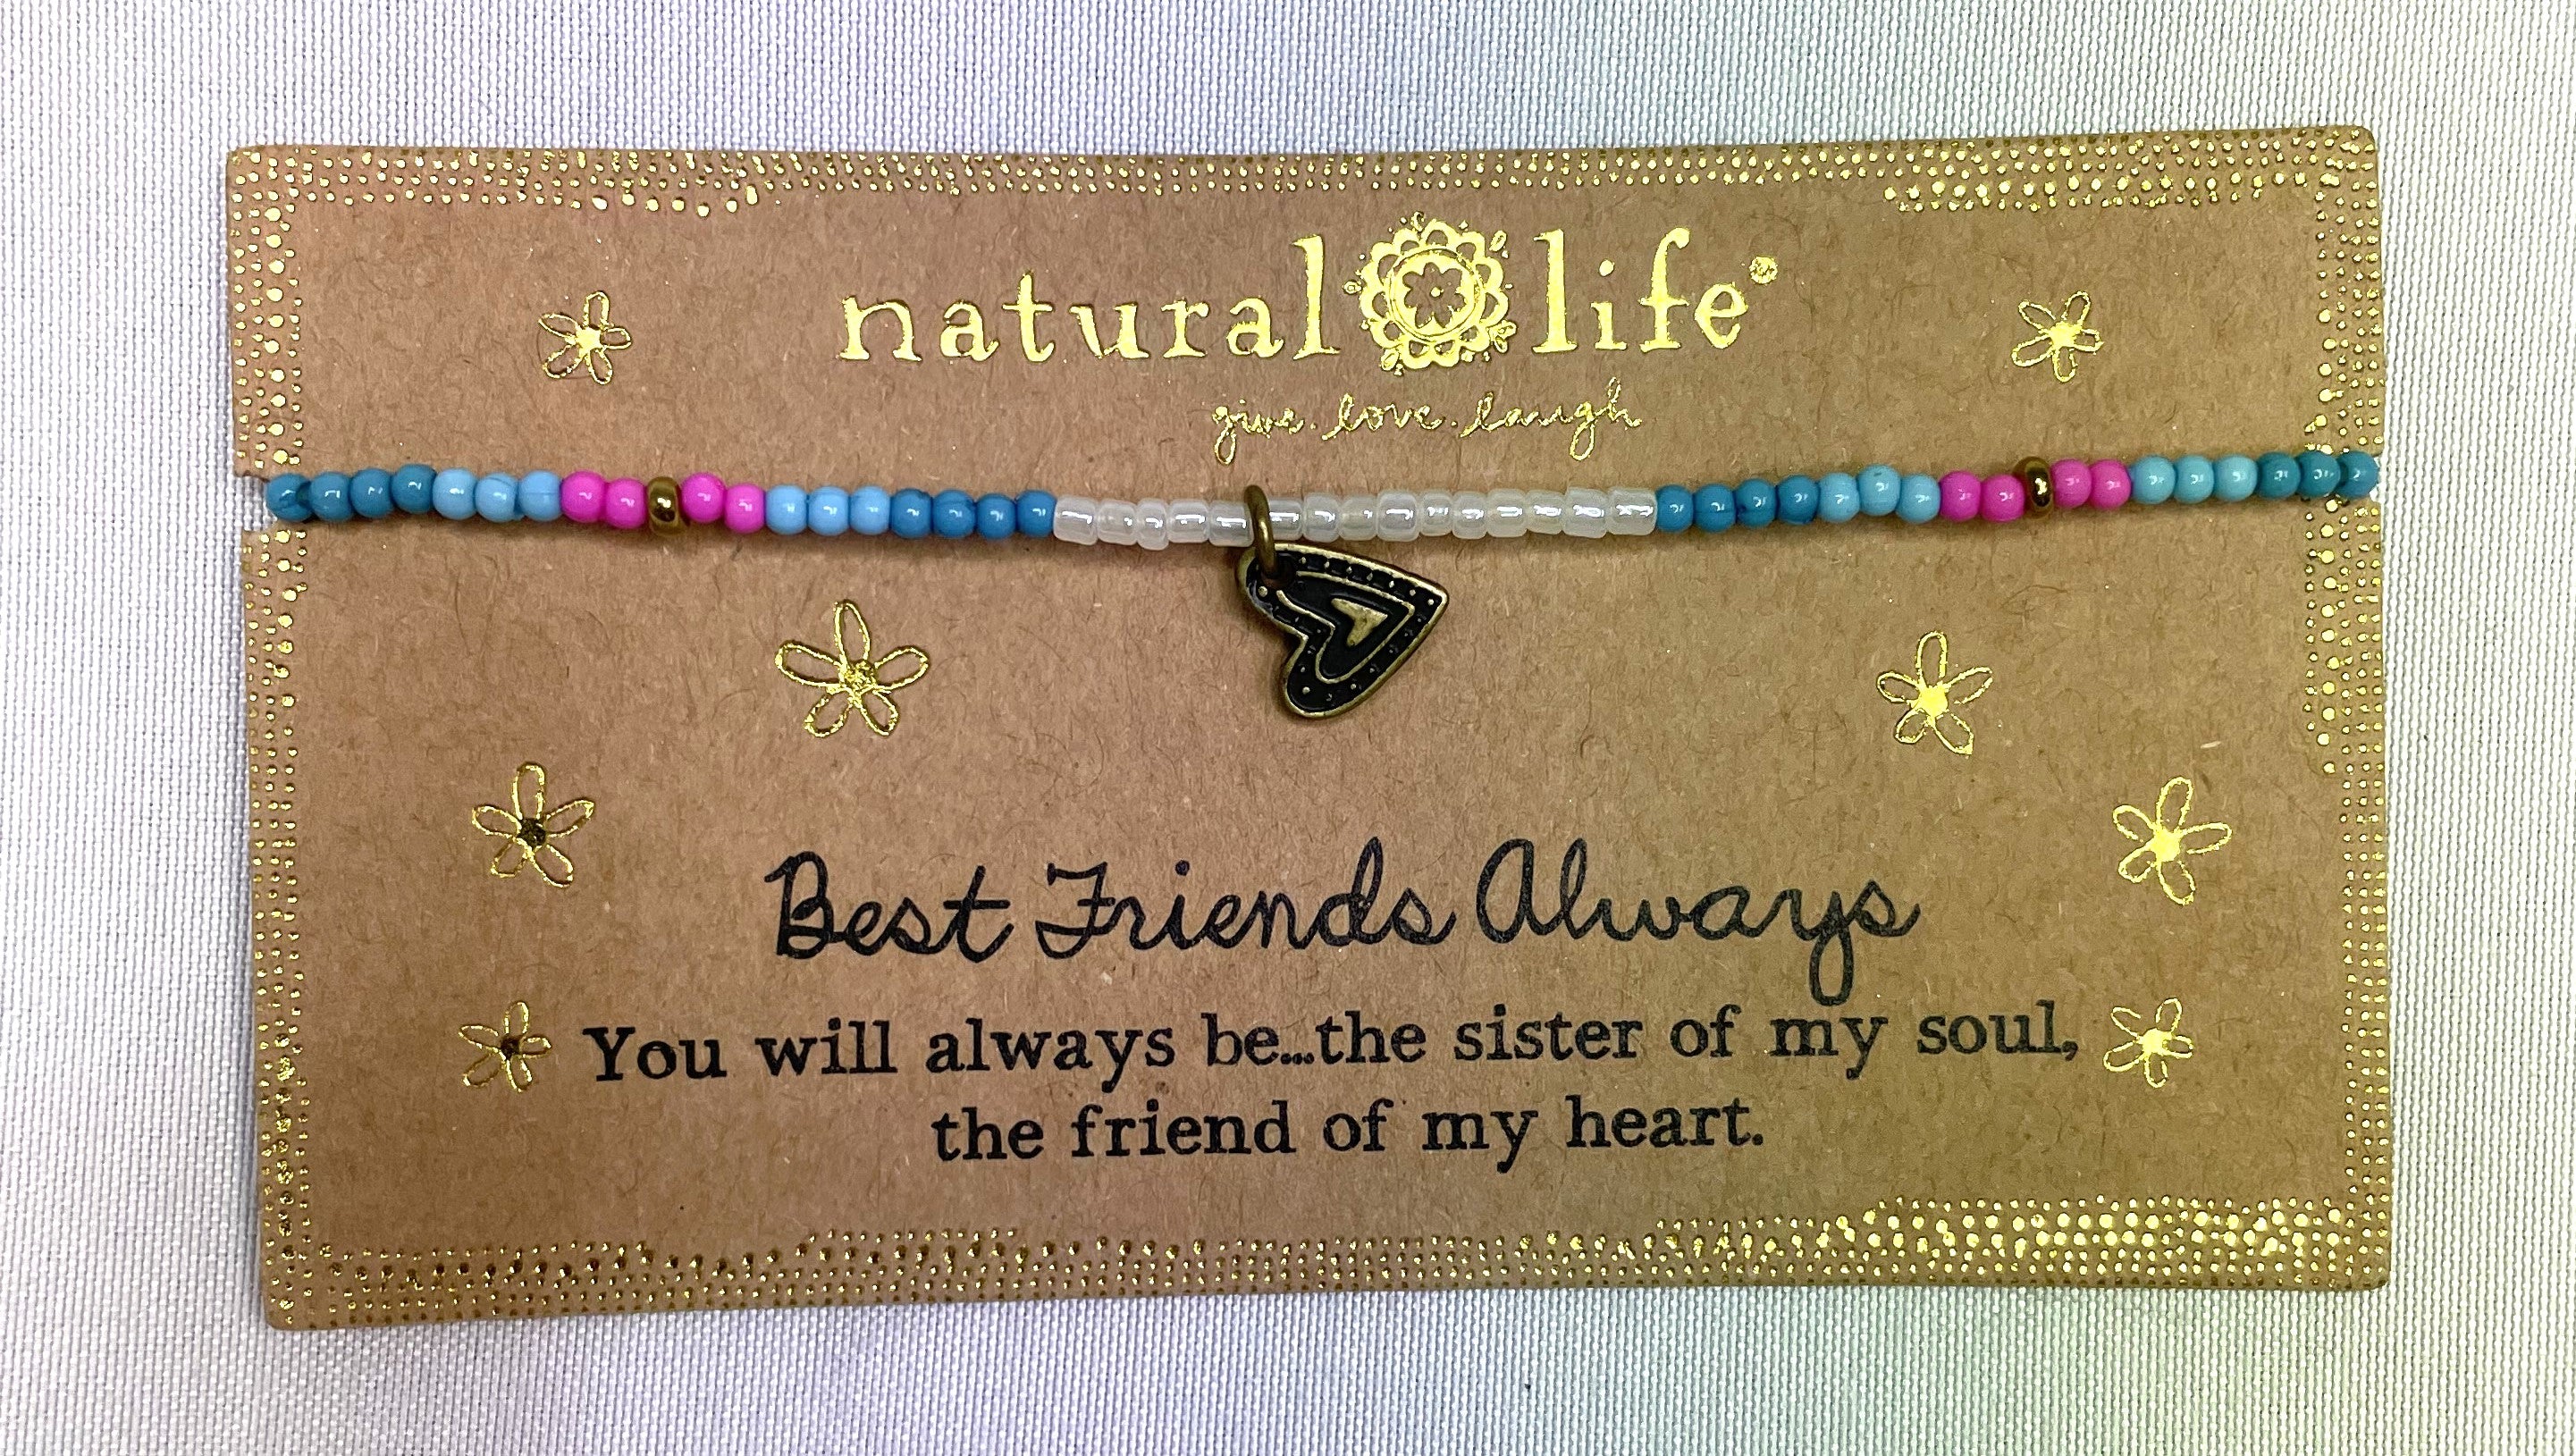 Best Friends Forever Bracelet